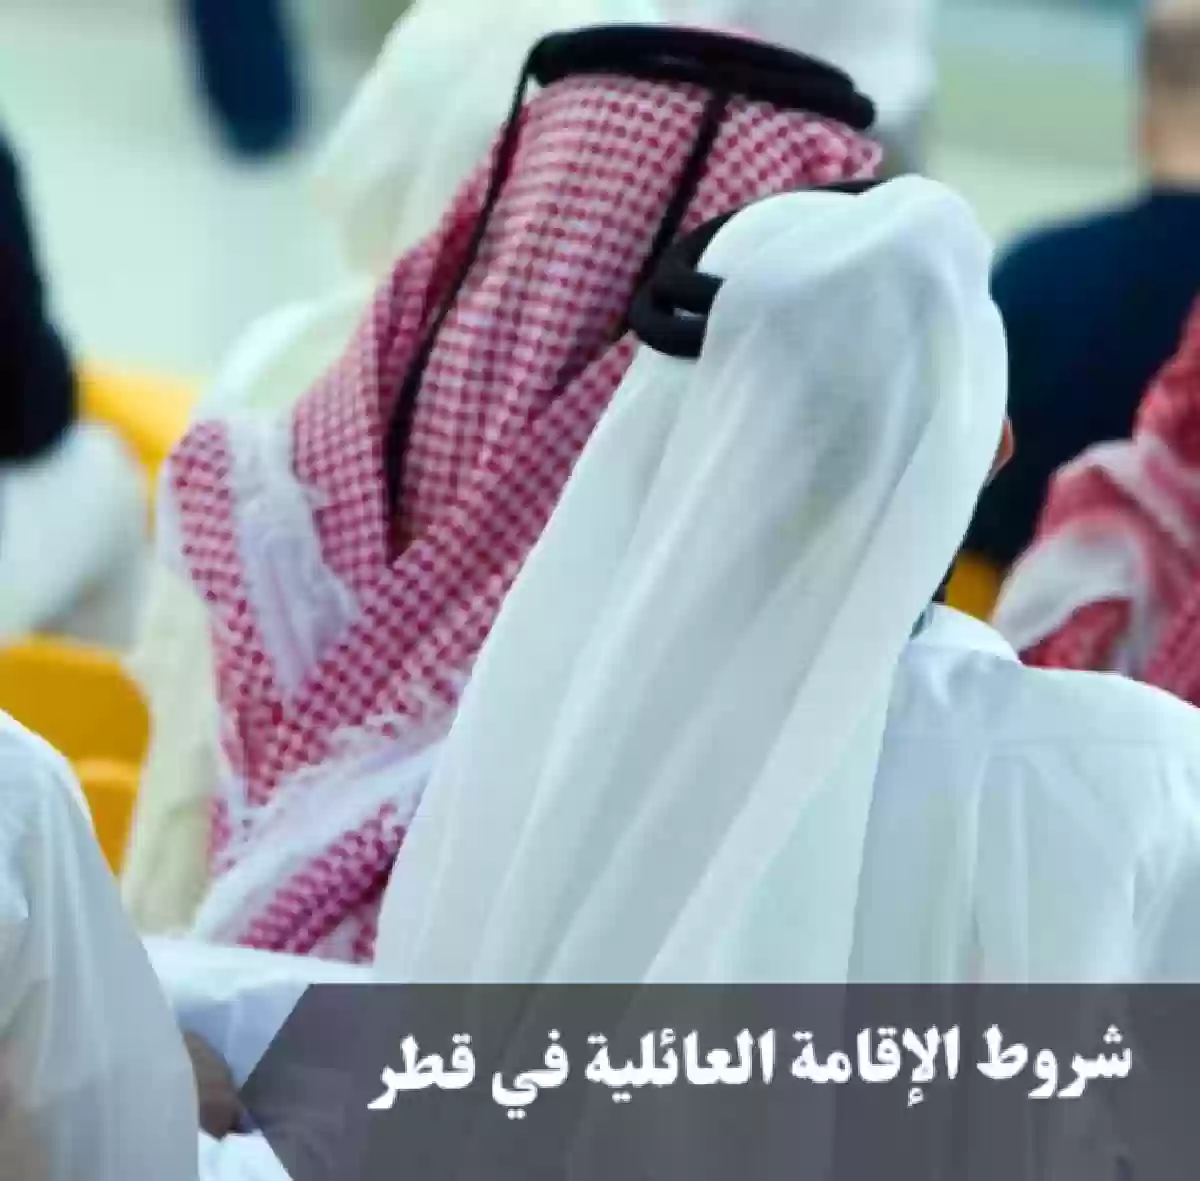 9 شروط للإقامة العائلية في قطر.. وأهم خطوات التسجيل والرسوم المطلوبة للحصول عليها